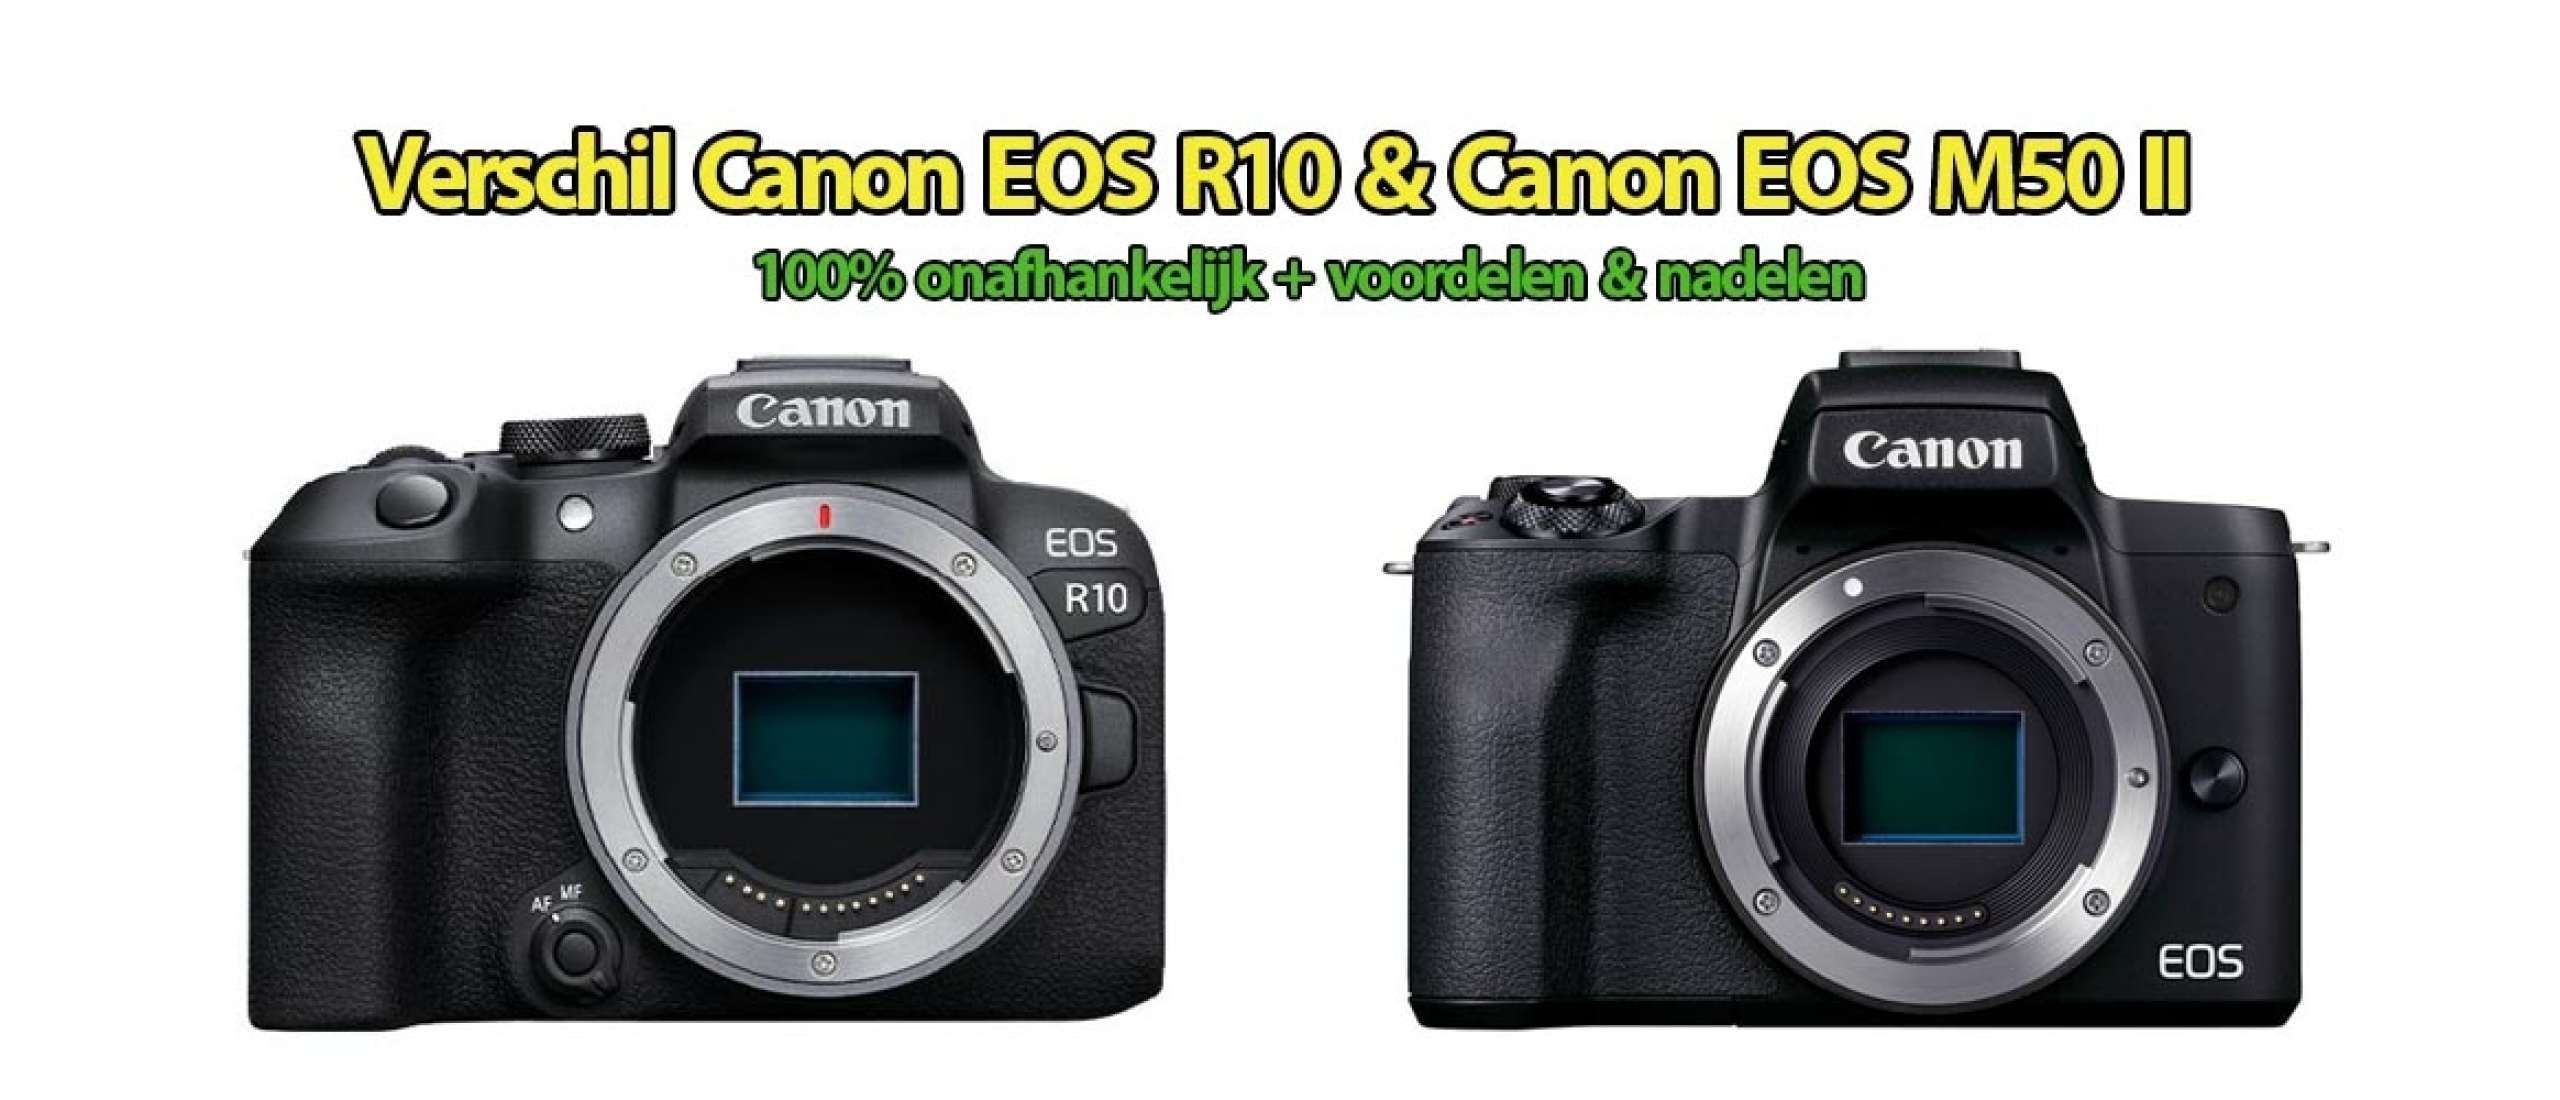 Verschil Canon EOS R10 en Canon EOS M50 II